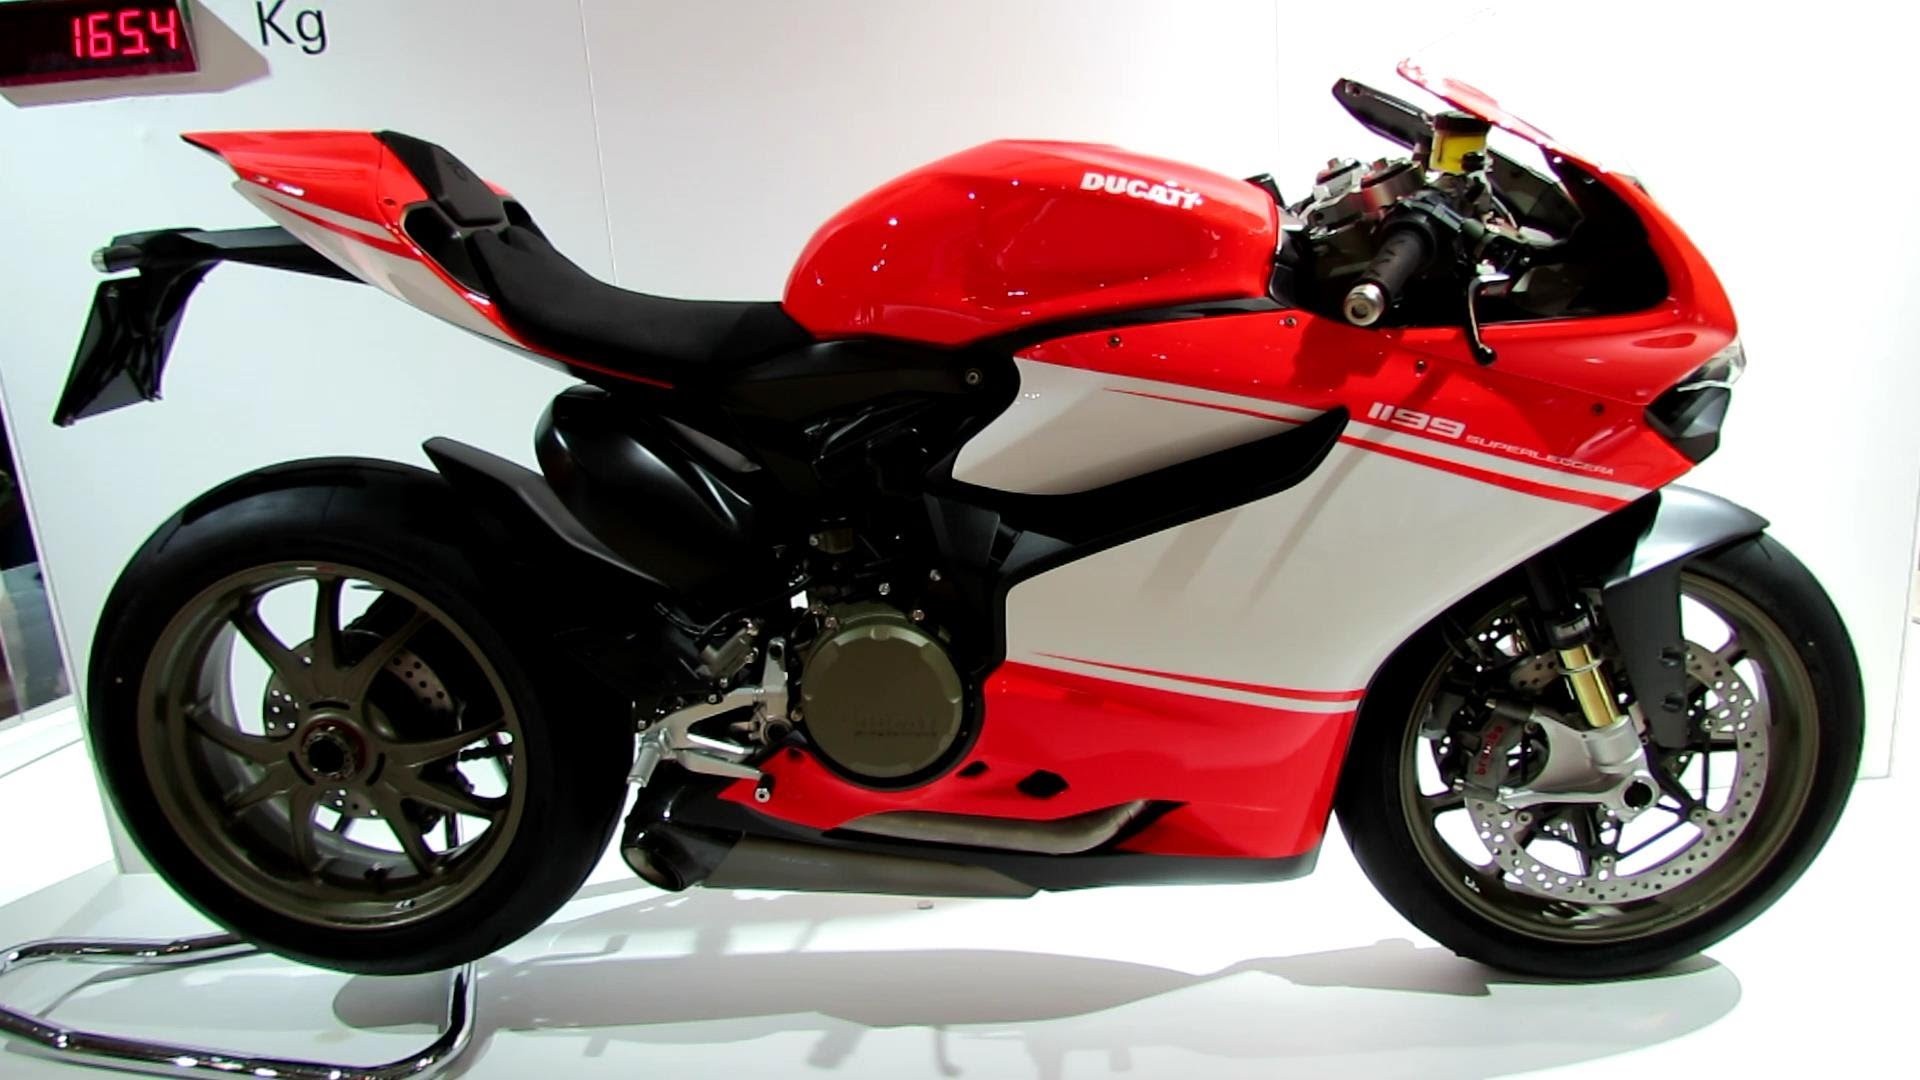 Ducati Ducati 1199 Superleggera Motorcycle 1920x1080